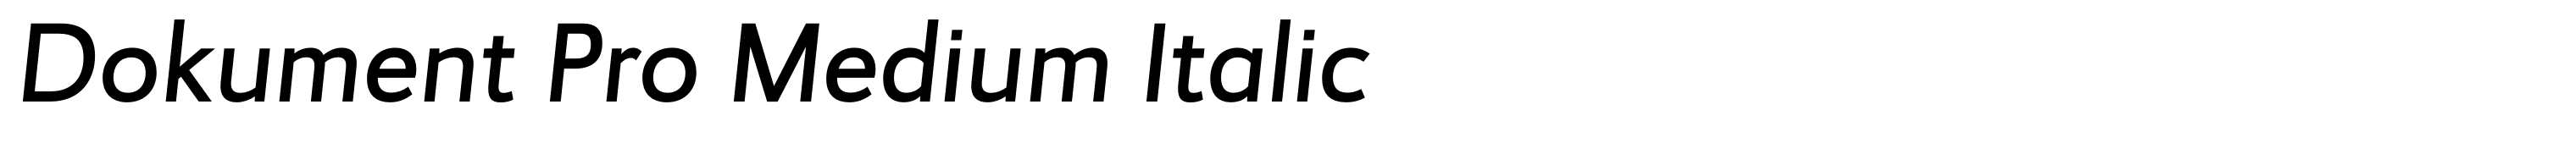 Dokument Pro Medium Italic